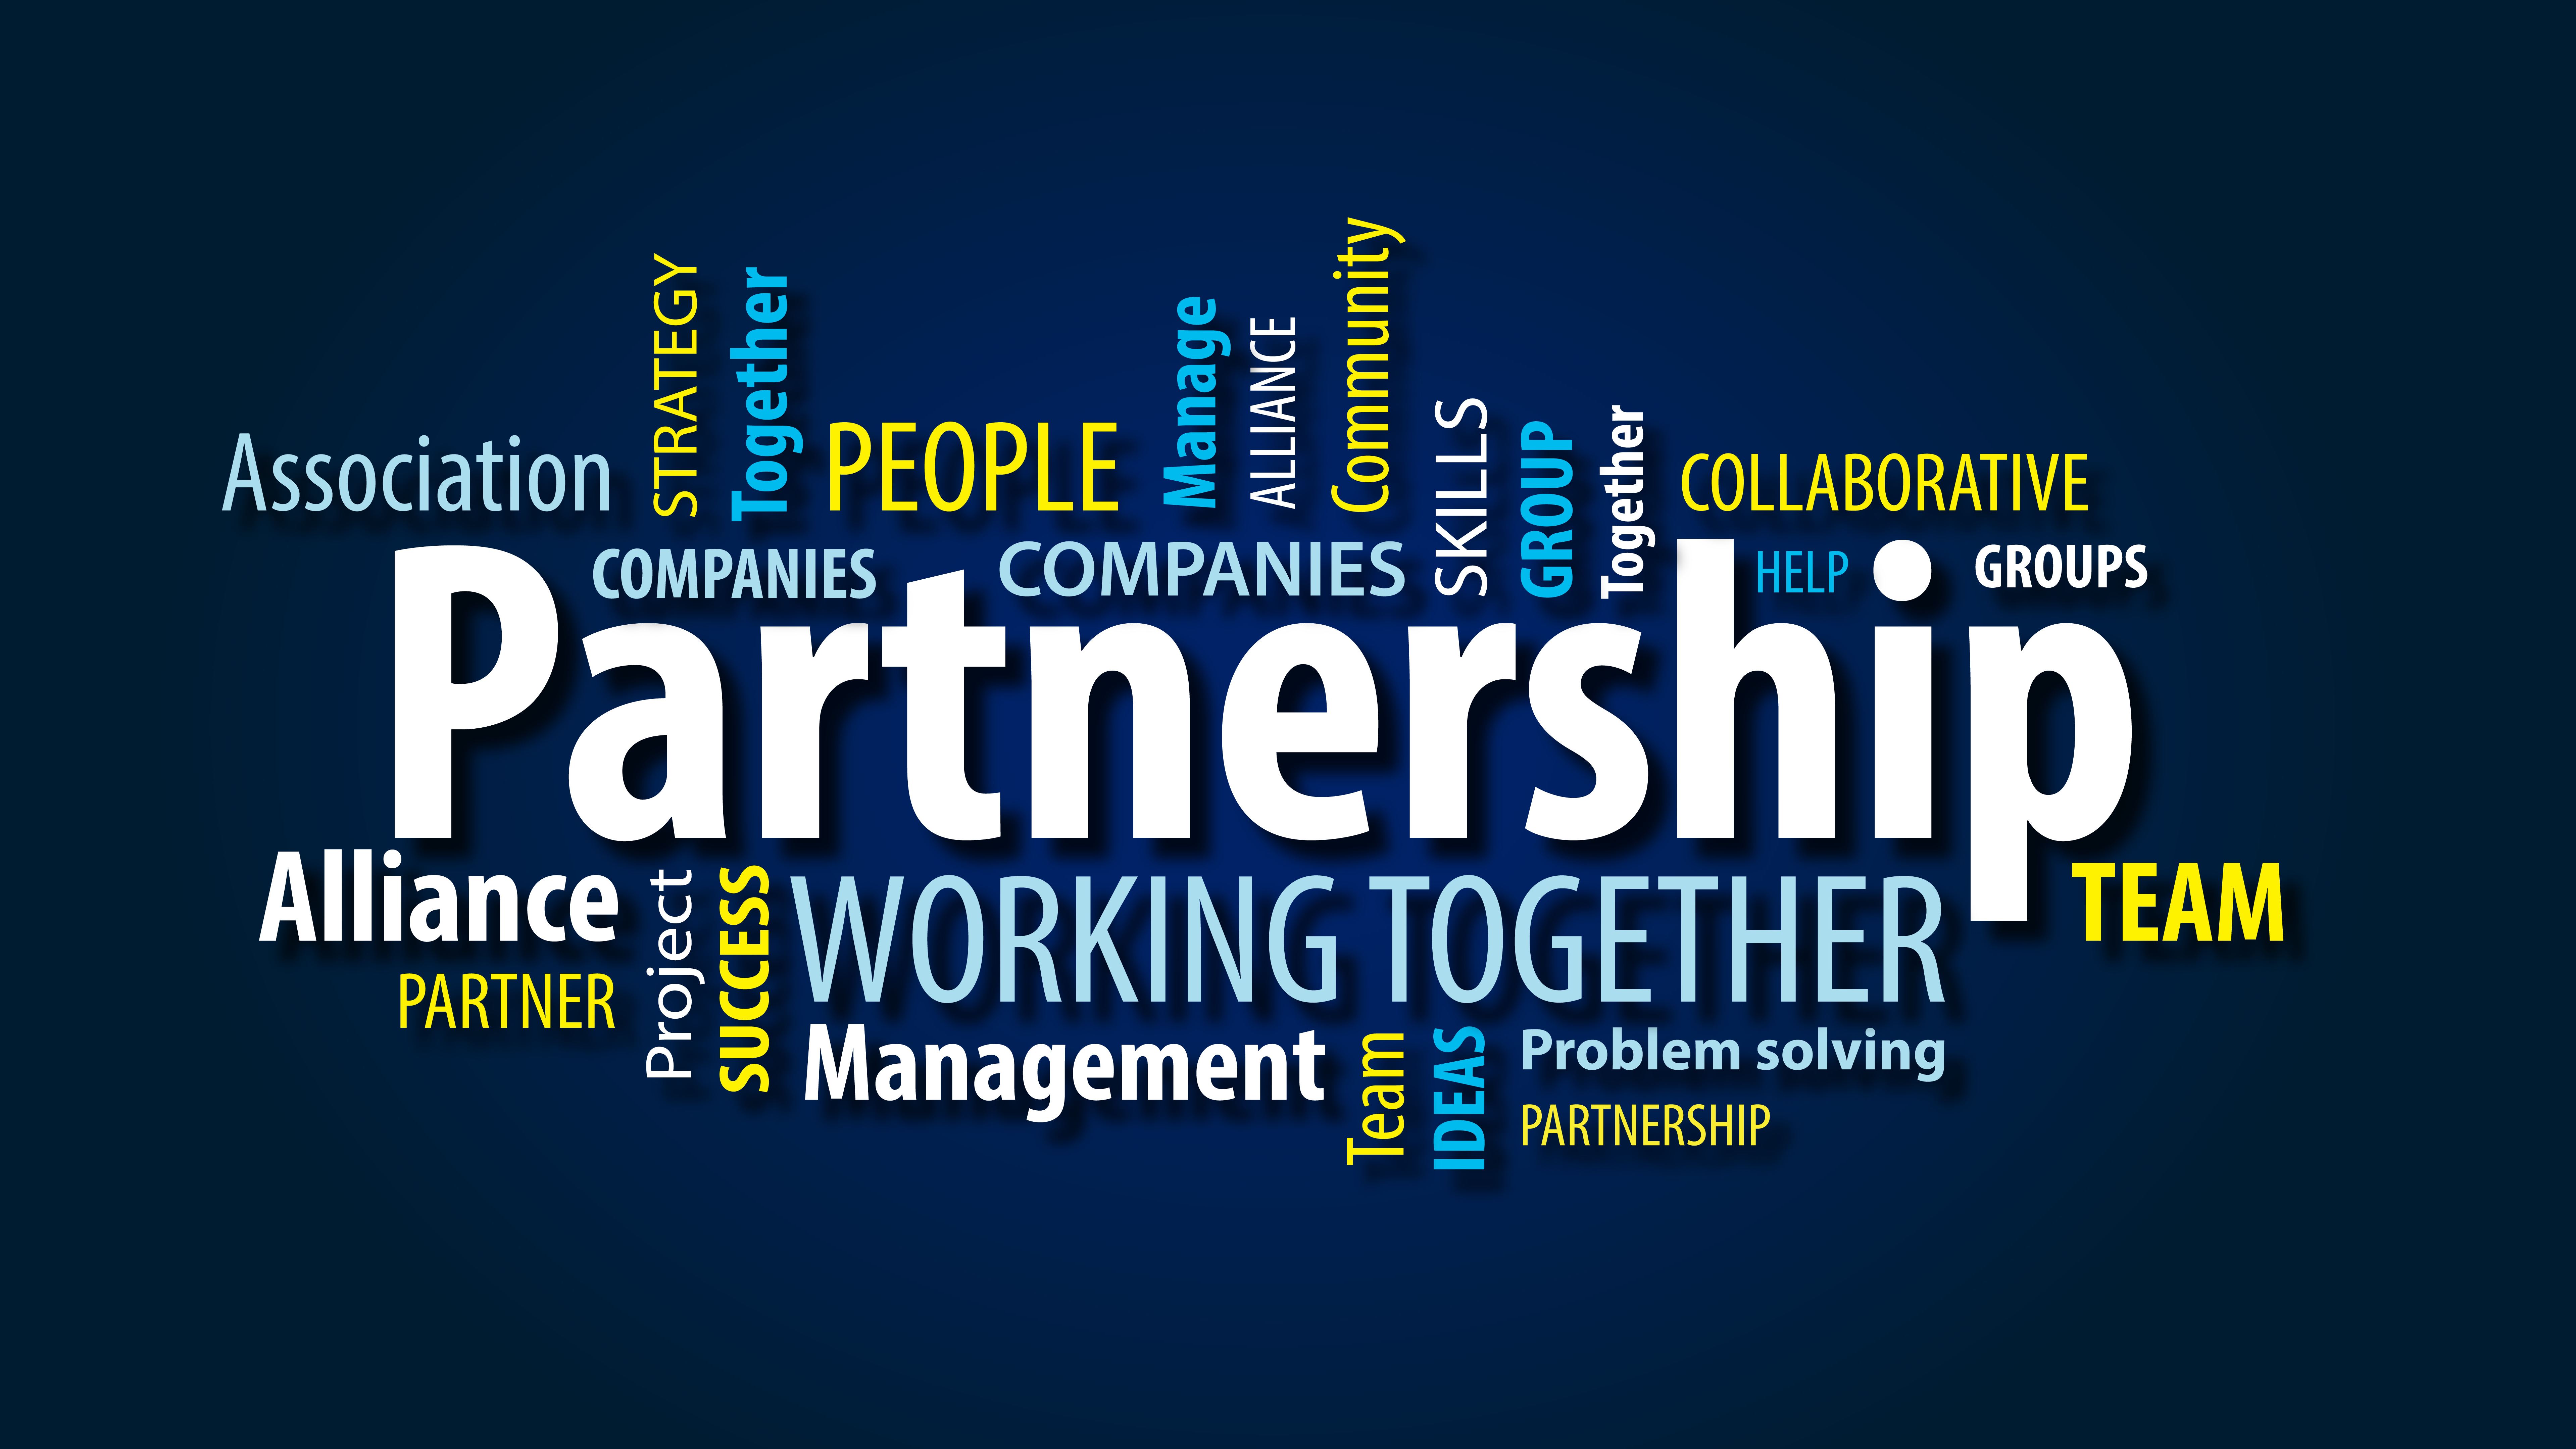 Partnership image